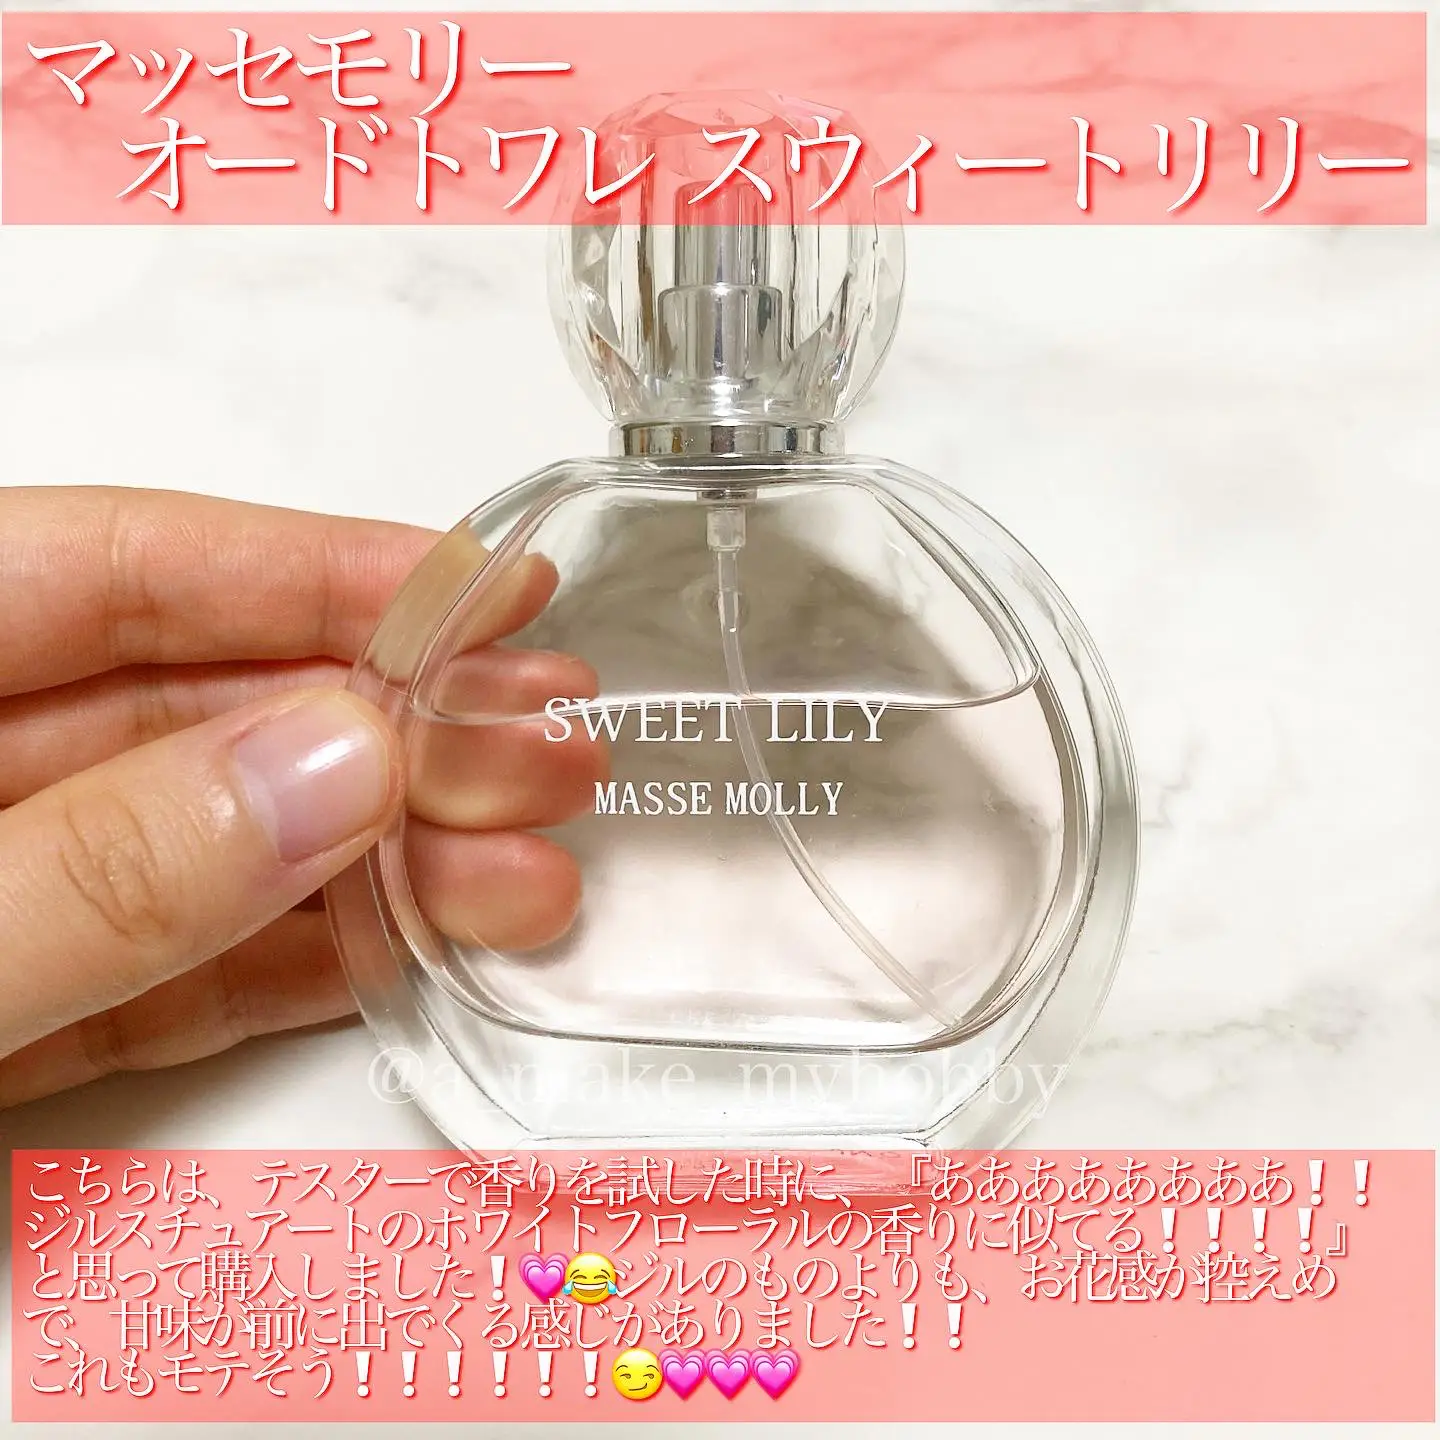 日本全国 送料無料 massemollyマッセモリー香水セット